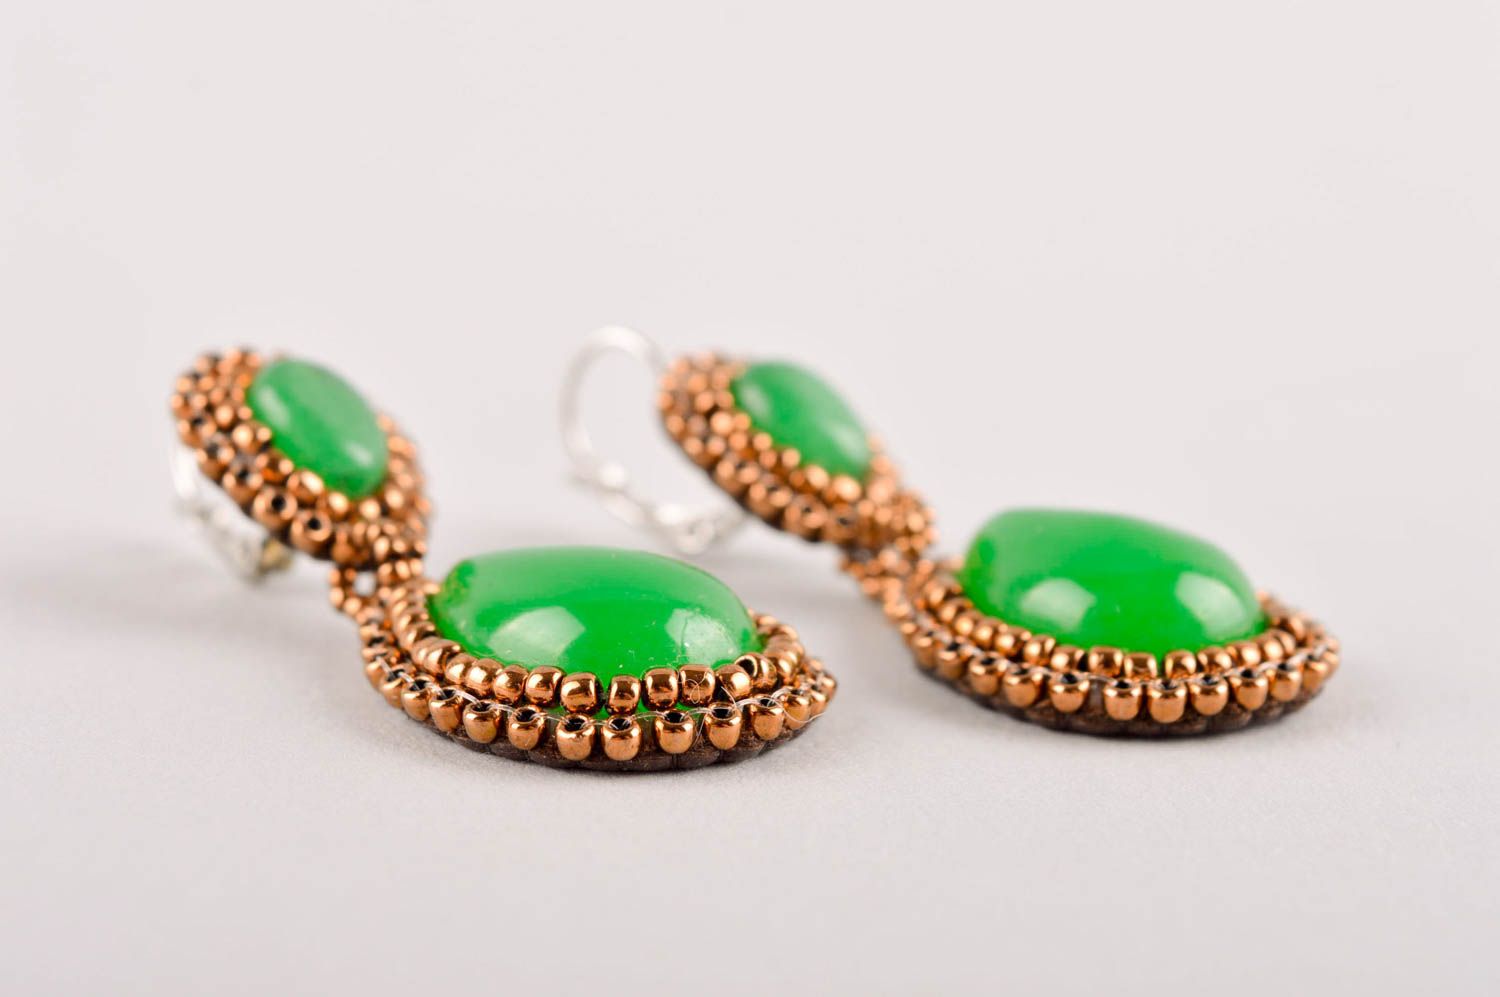 Handmade earrings designer earrings designer jewelry beaded earrings gift ideas photo 4